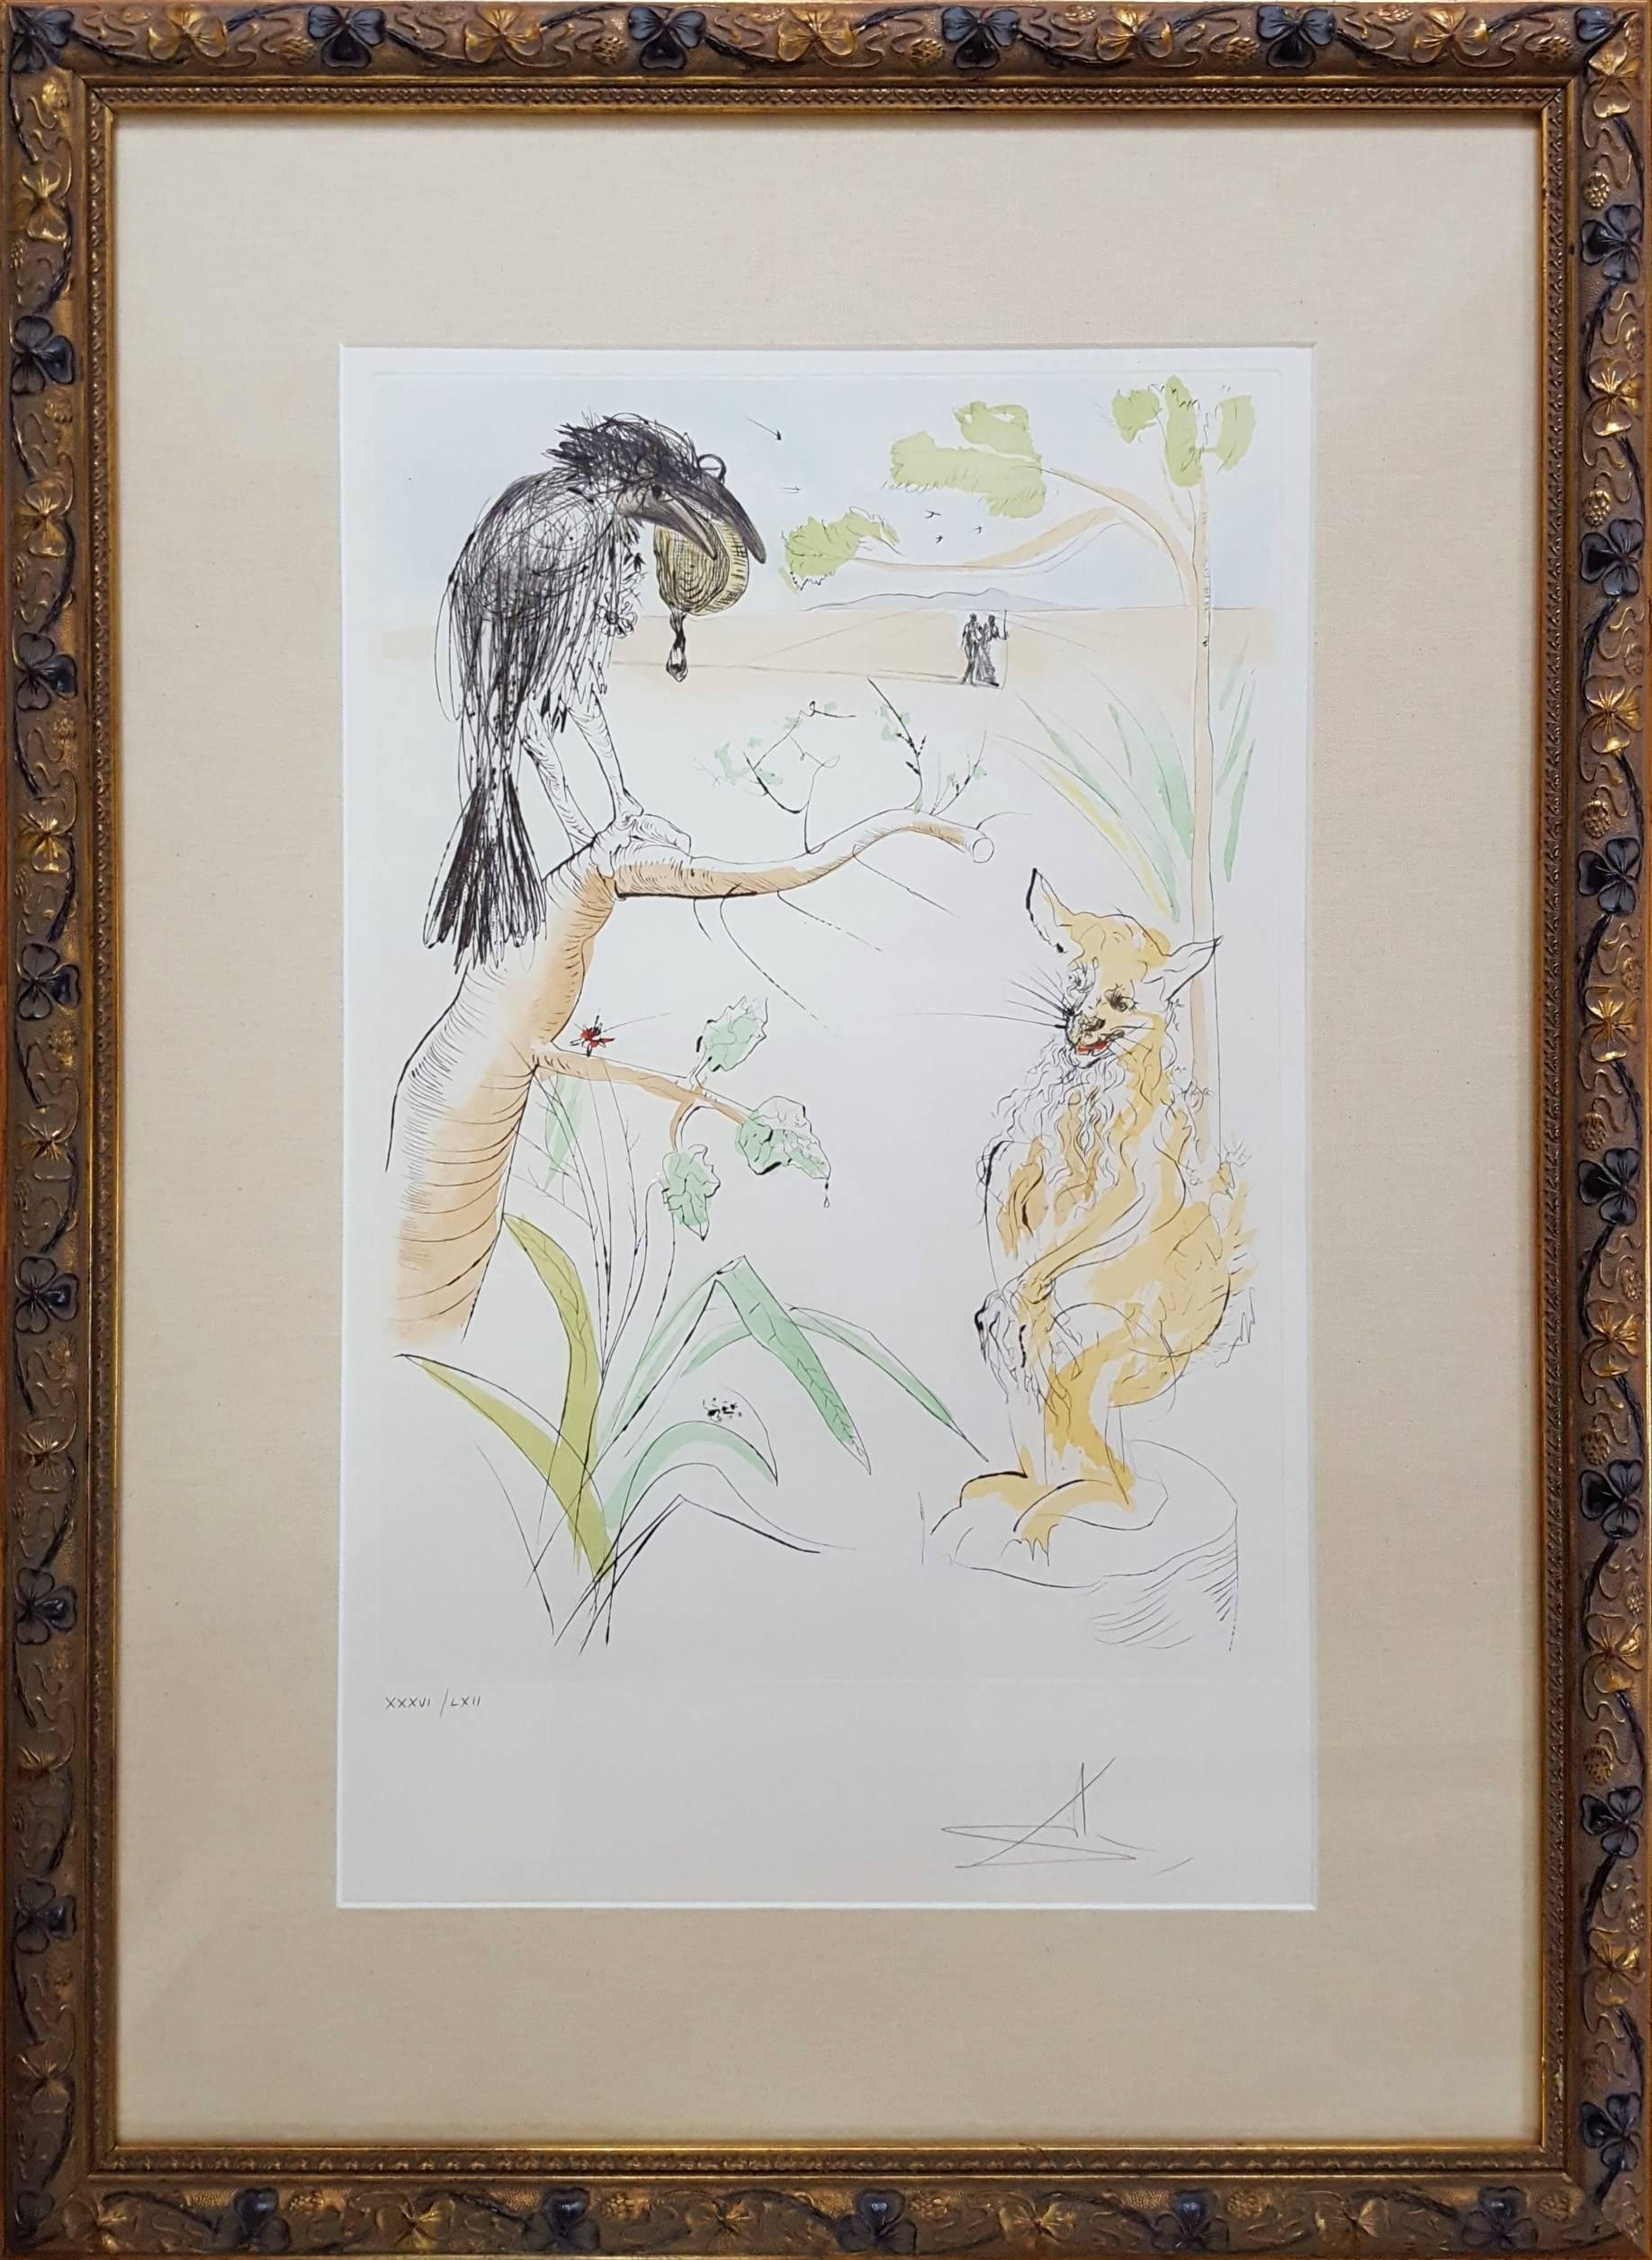 Le Corbeau et le Renard (The Raven and the Fox) - Print by Salvador Dalí